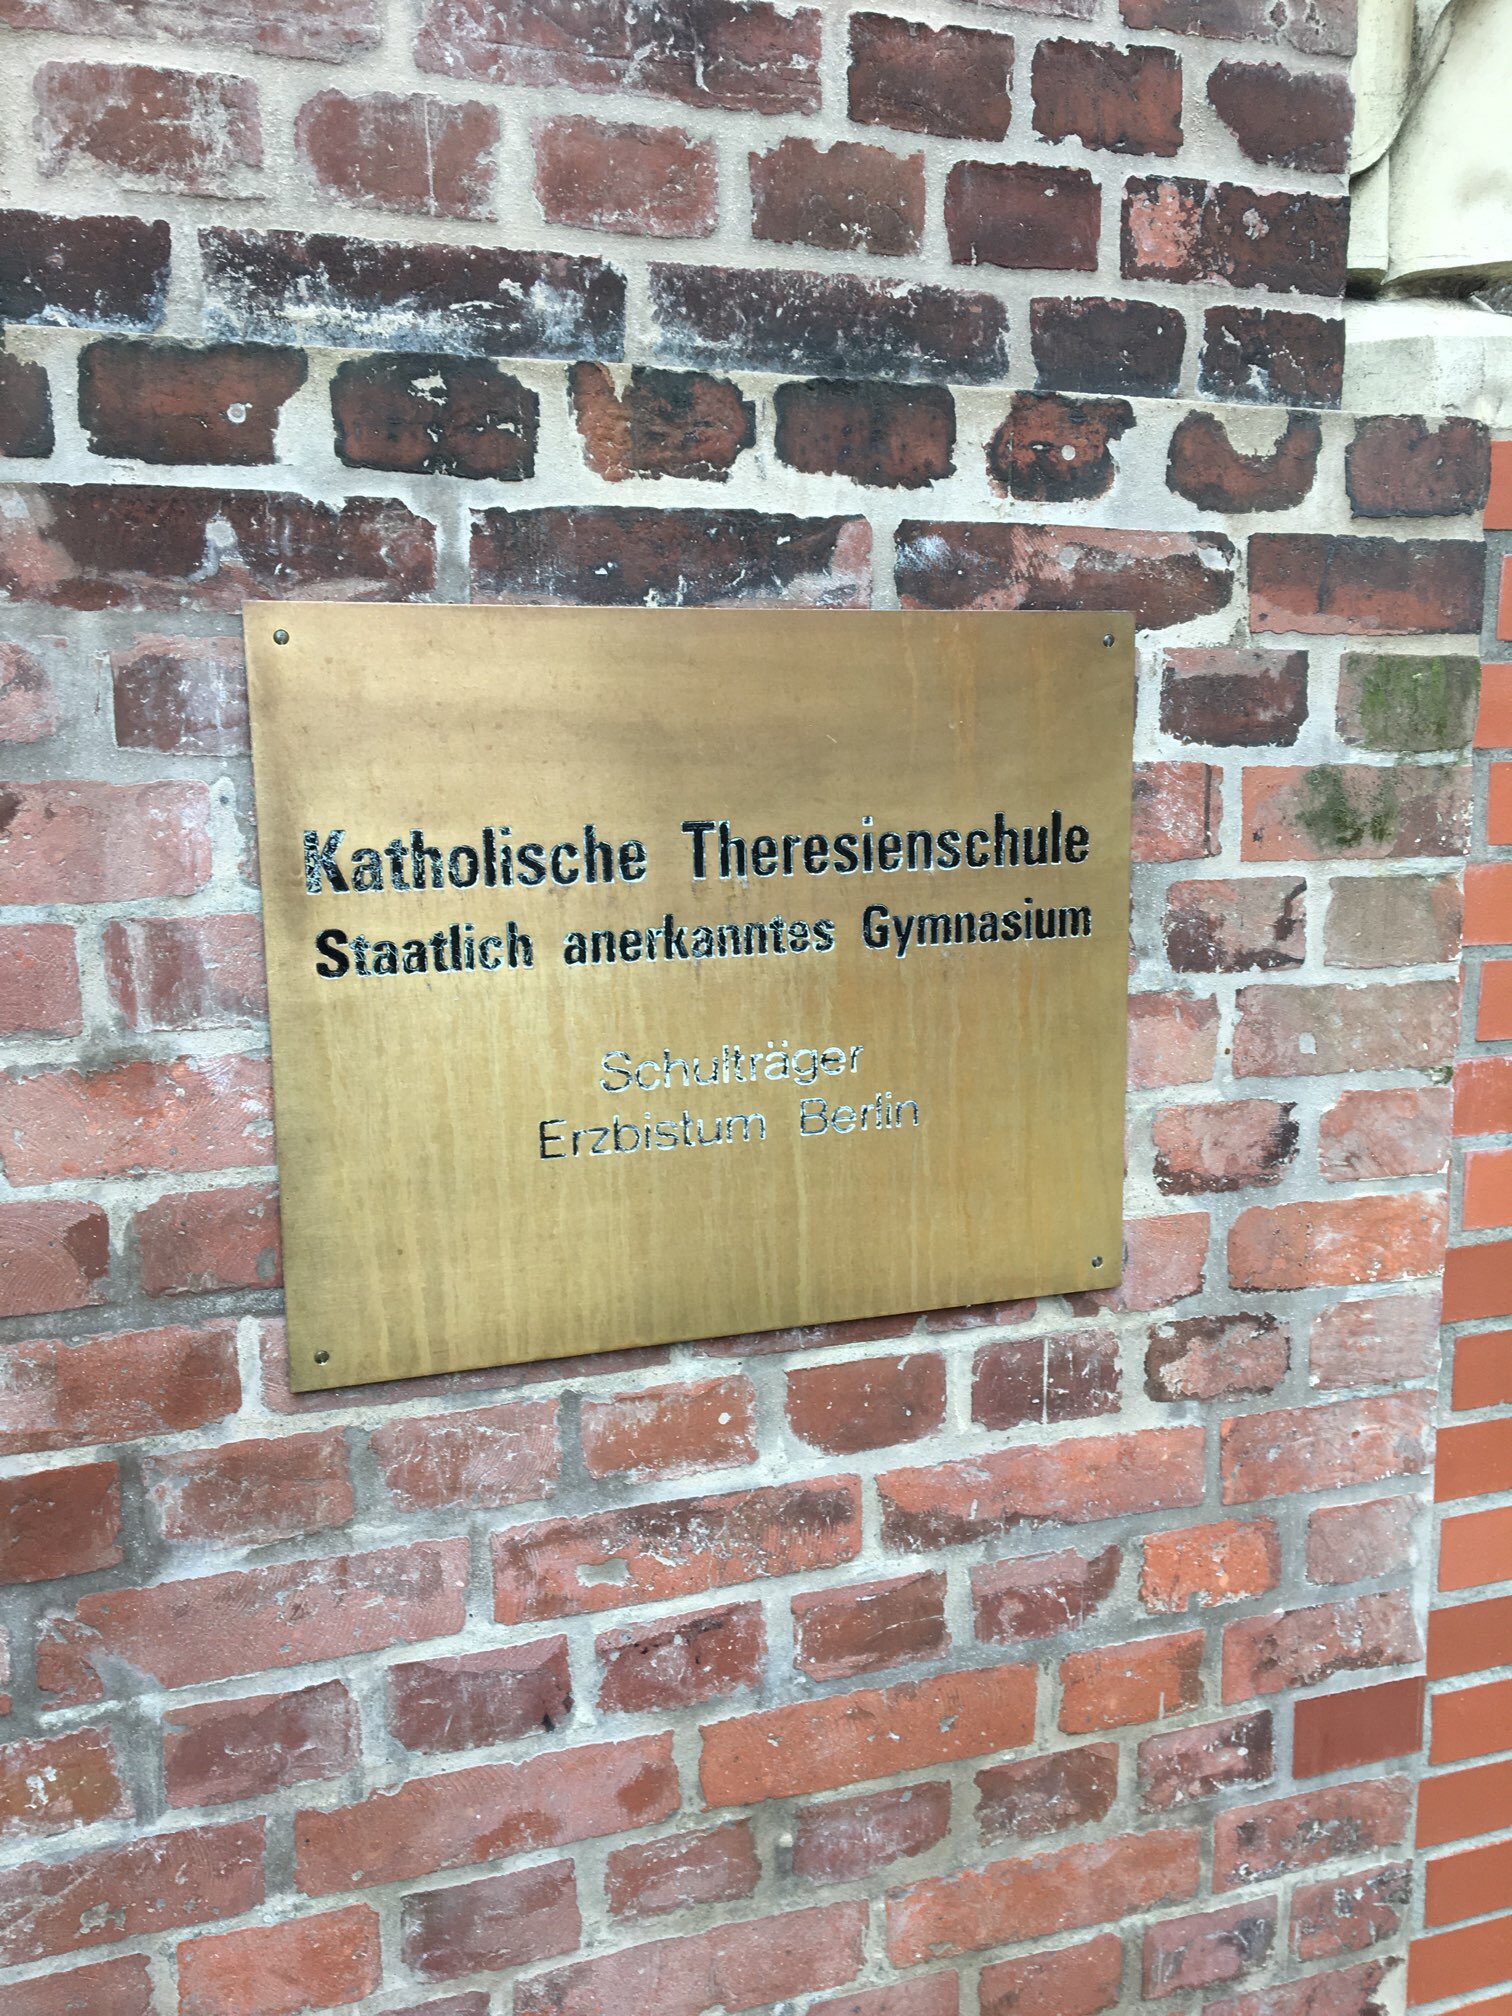 Bild 37 Katholische Theresienschule in Berlin